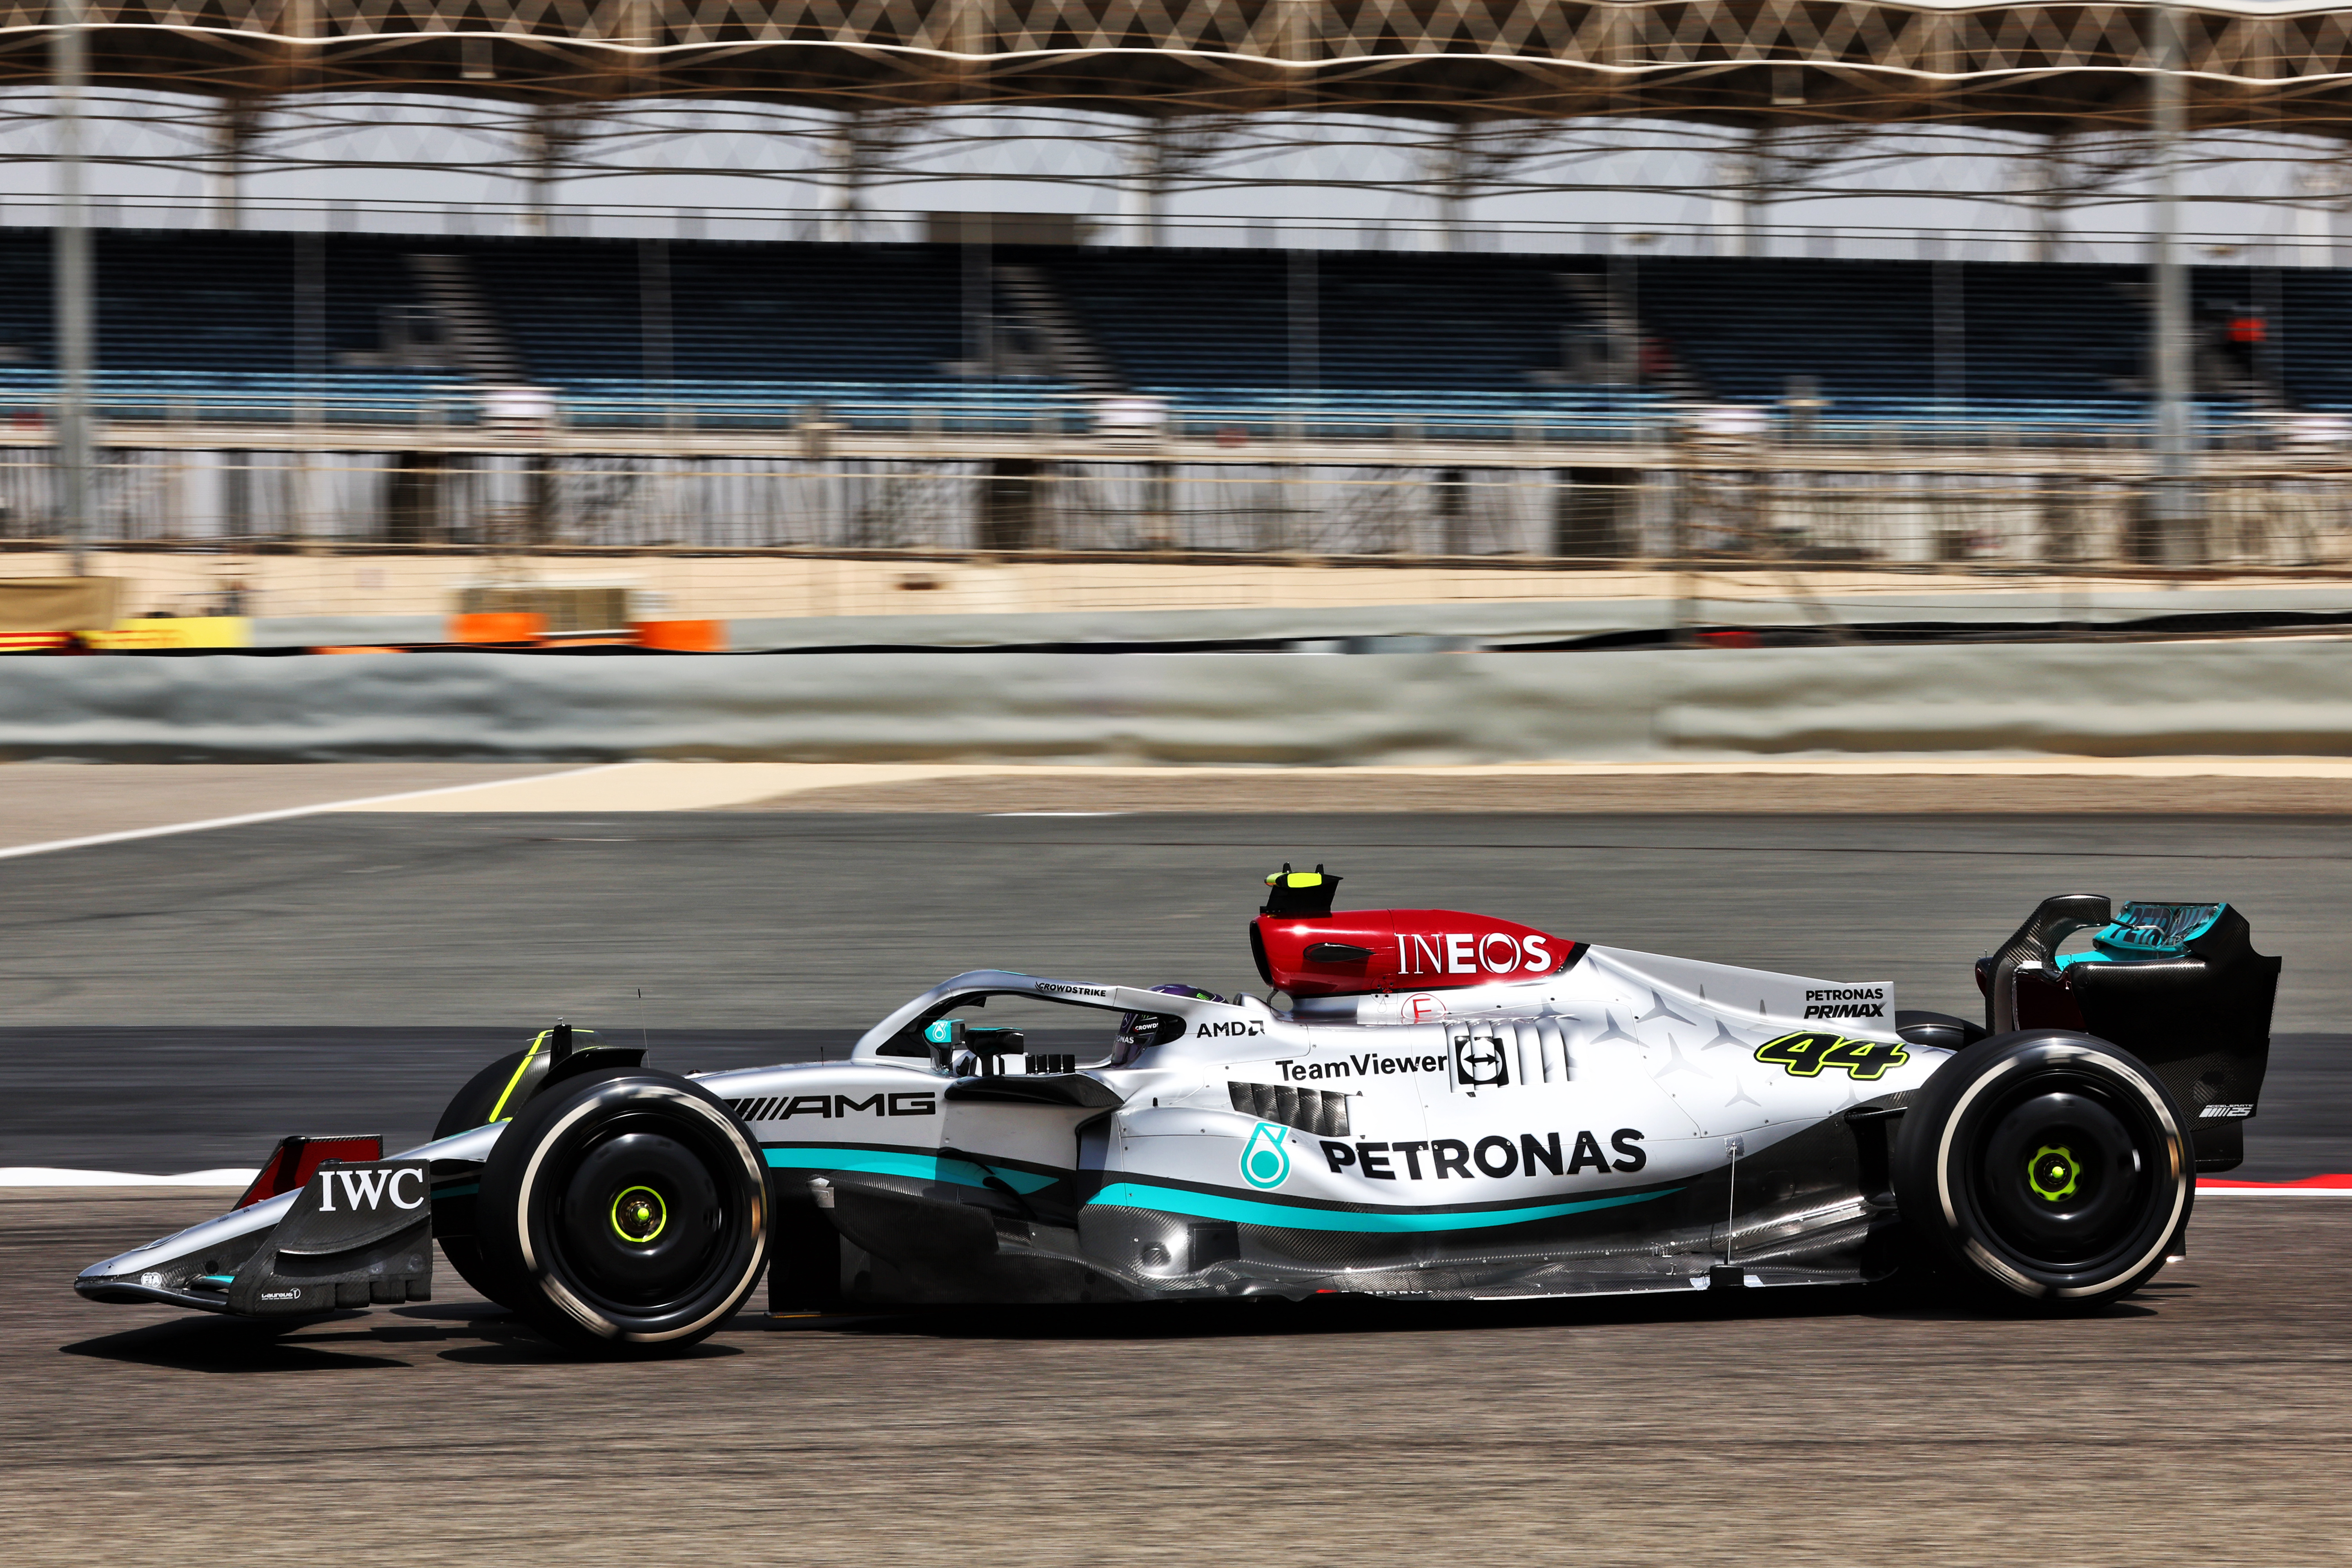 Motor Racing Formula One Testing Day One Sakhir, Bahrain